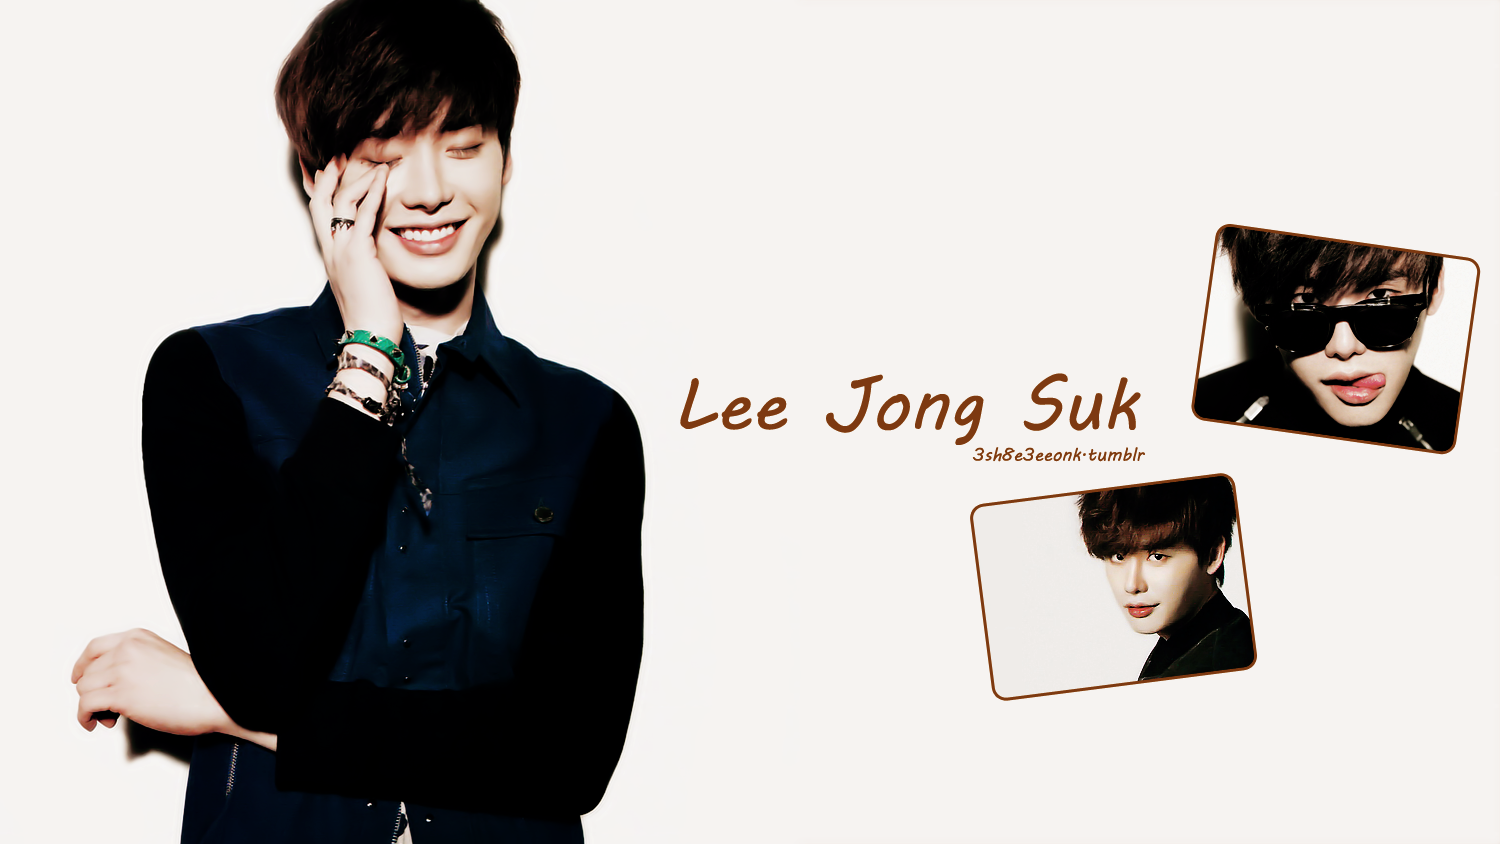 ♥ Lee Jong Suk ♥ - Lee Jong Suk Smile W - HD Wallpaper 